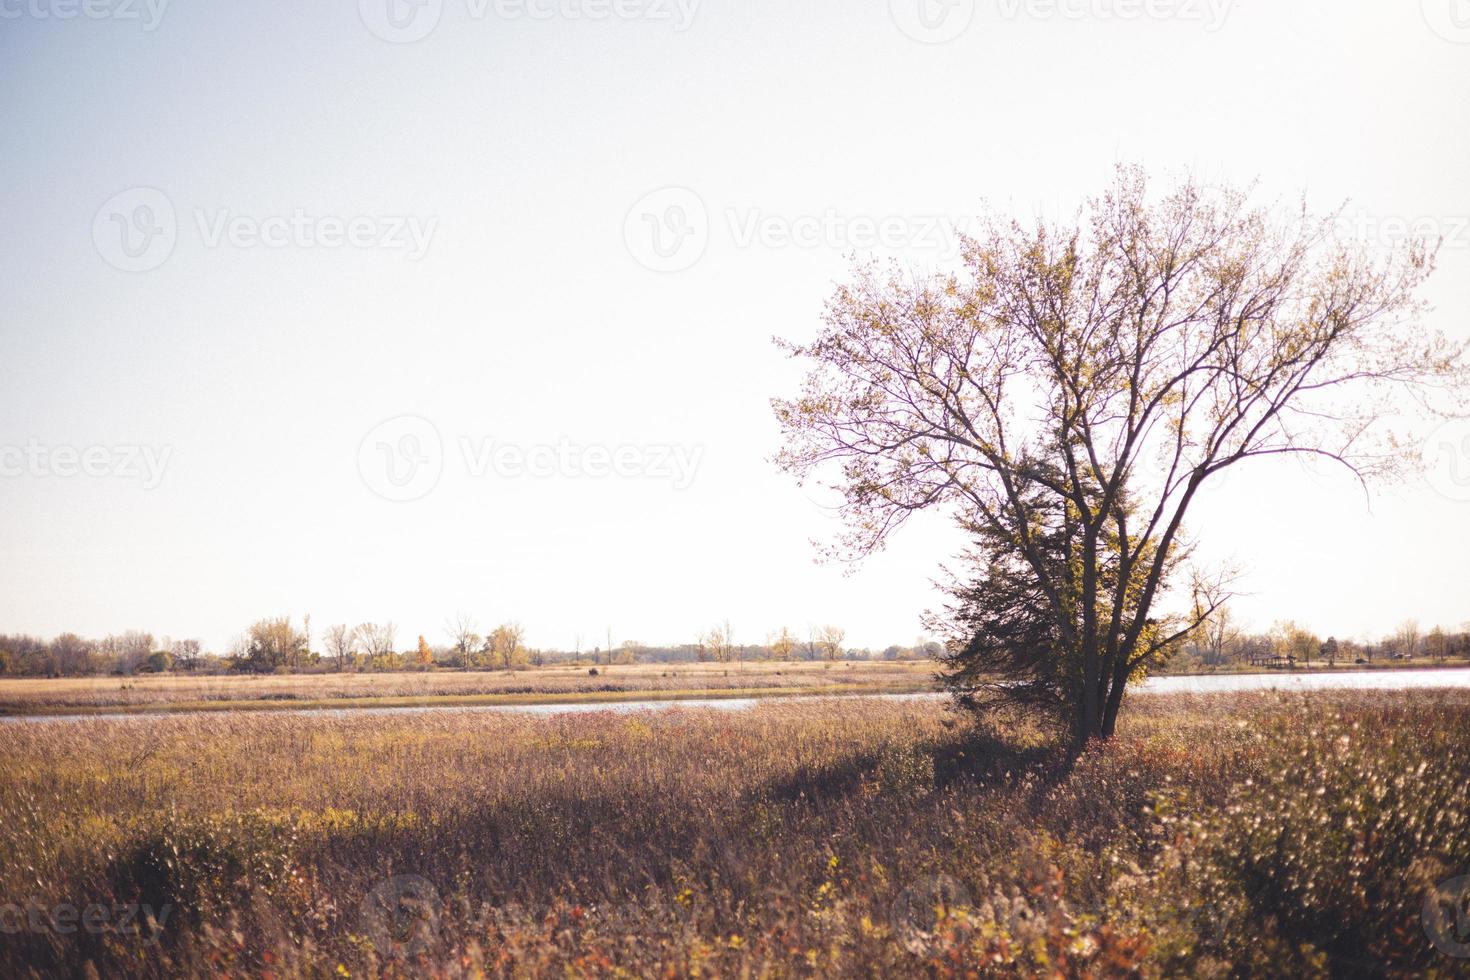 bladlöst träd och tall längs flodstranden i västra Wisconsin. skuggor kastade över torra gräs. molnig himmel i horisonten. foto